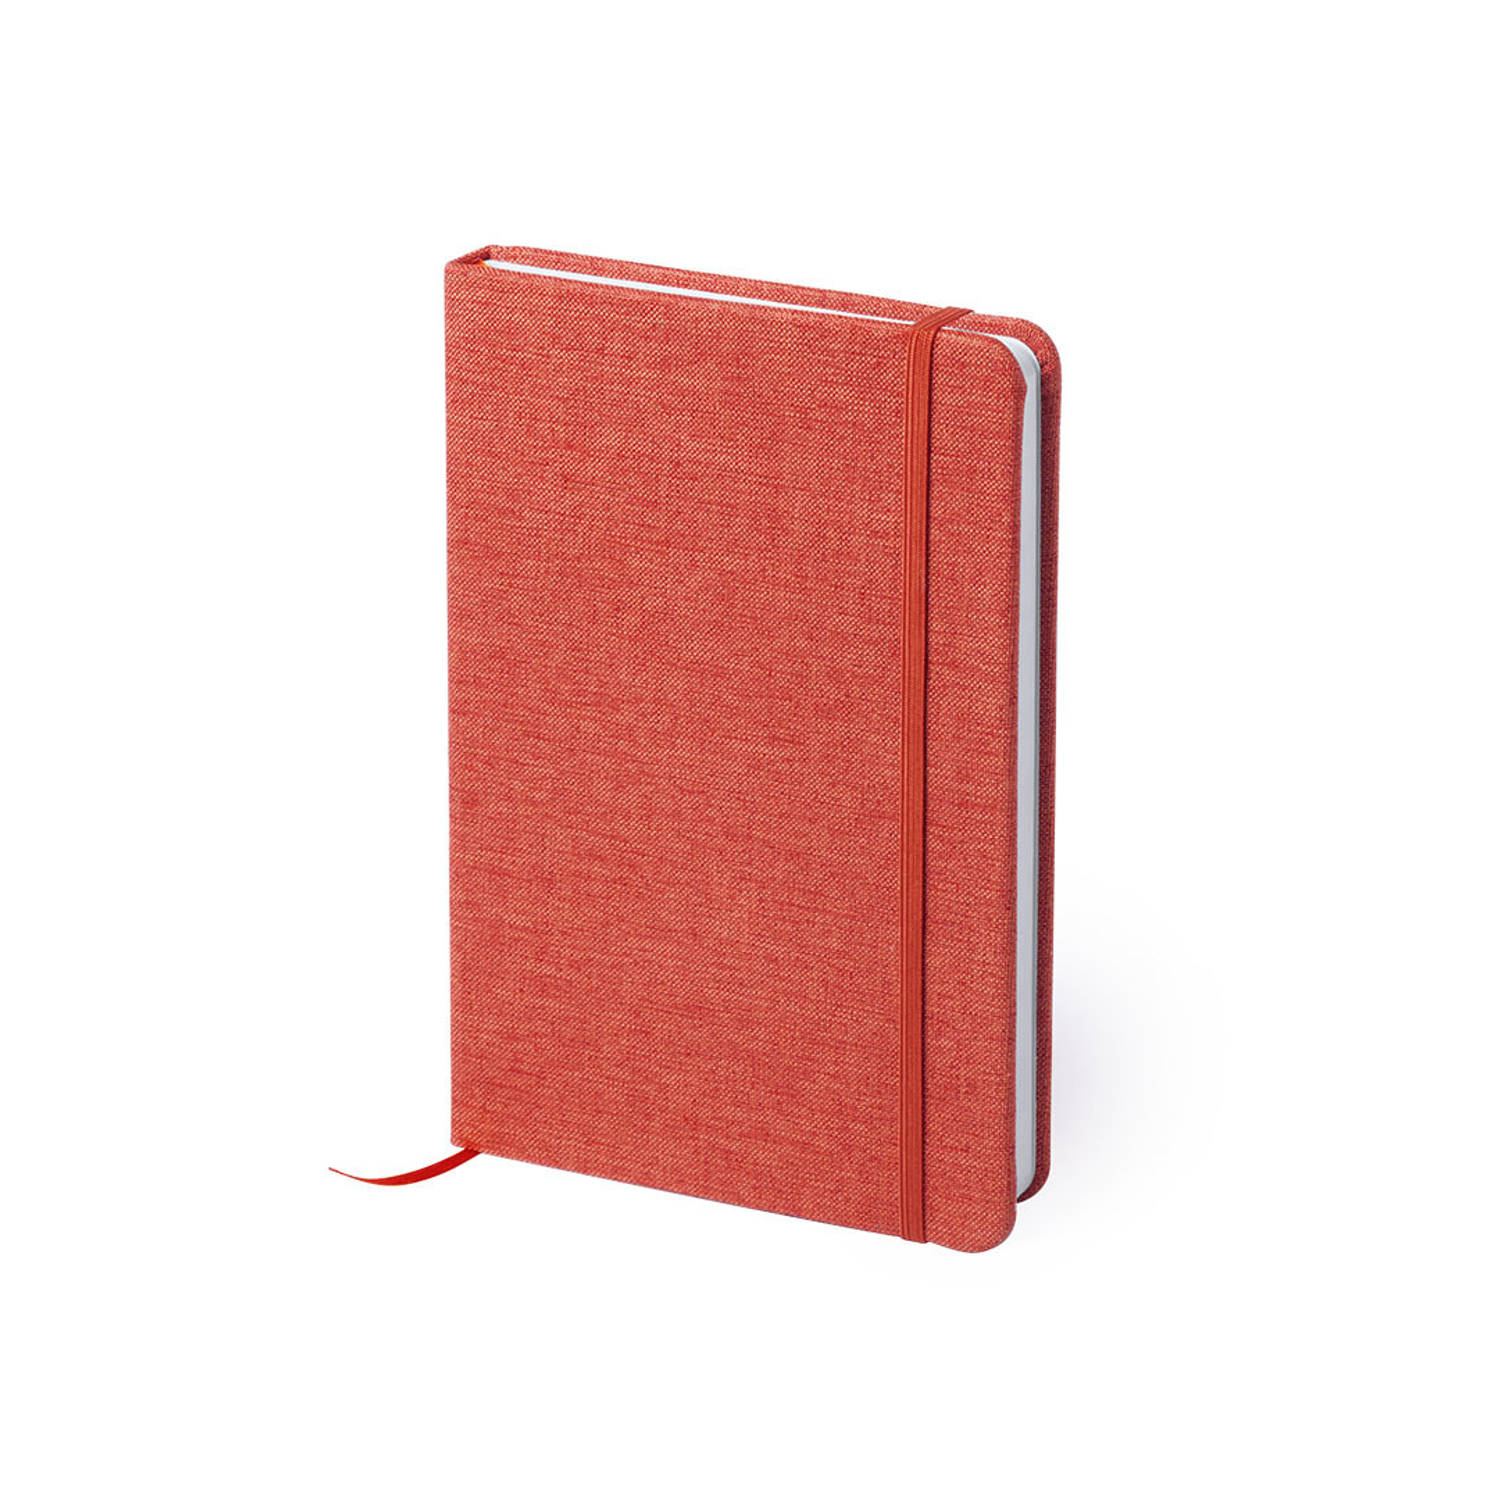 Notitieboekje gelinieerd canvas kaft rood met elastiek 13 x 18 cm - Notitieboek